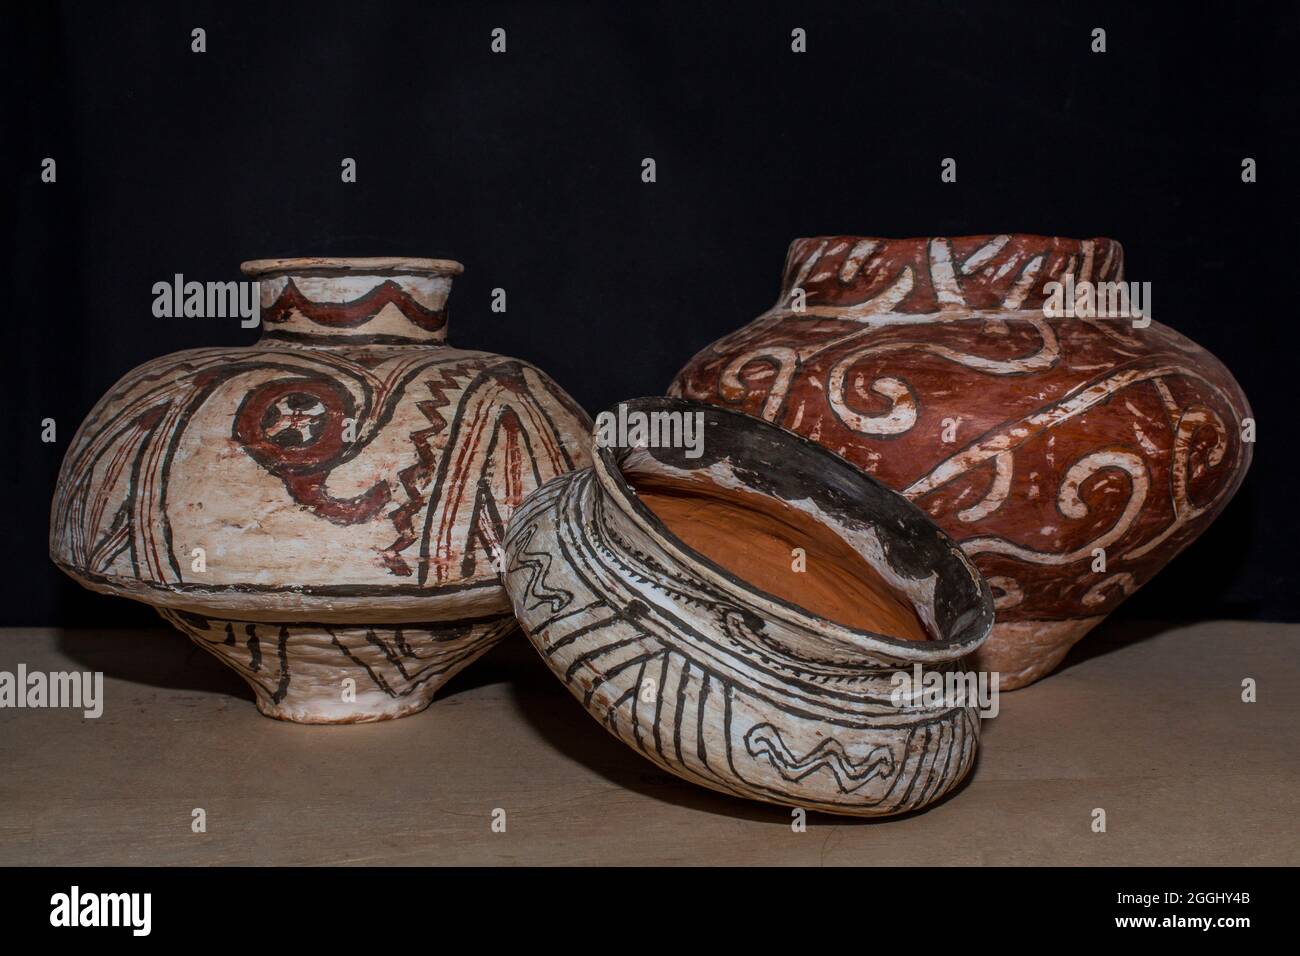 Reproduction de pots en céramique de culture Cucuteni avec peinture décorative traditionnelle. Banque D'Images